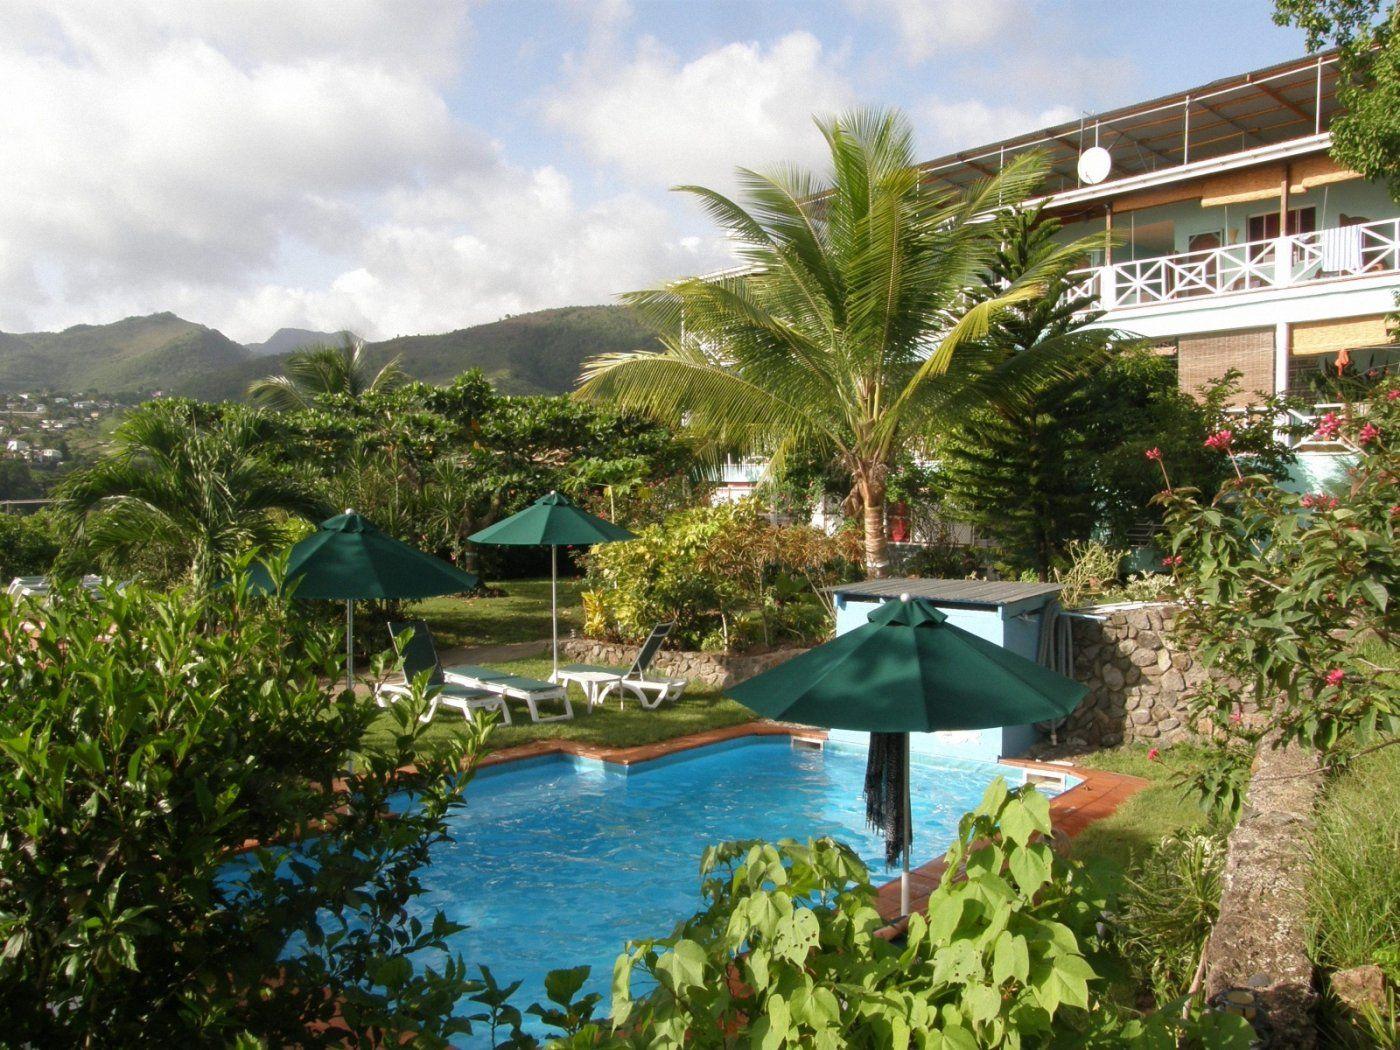 Luxury villas in Dominica 1400x1050 Wallpaper, Dominica 1400x1050